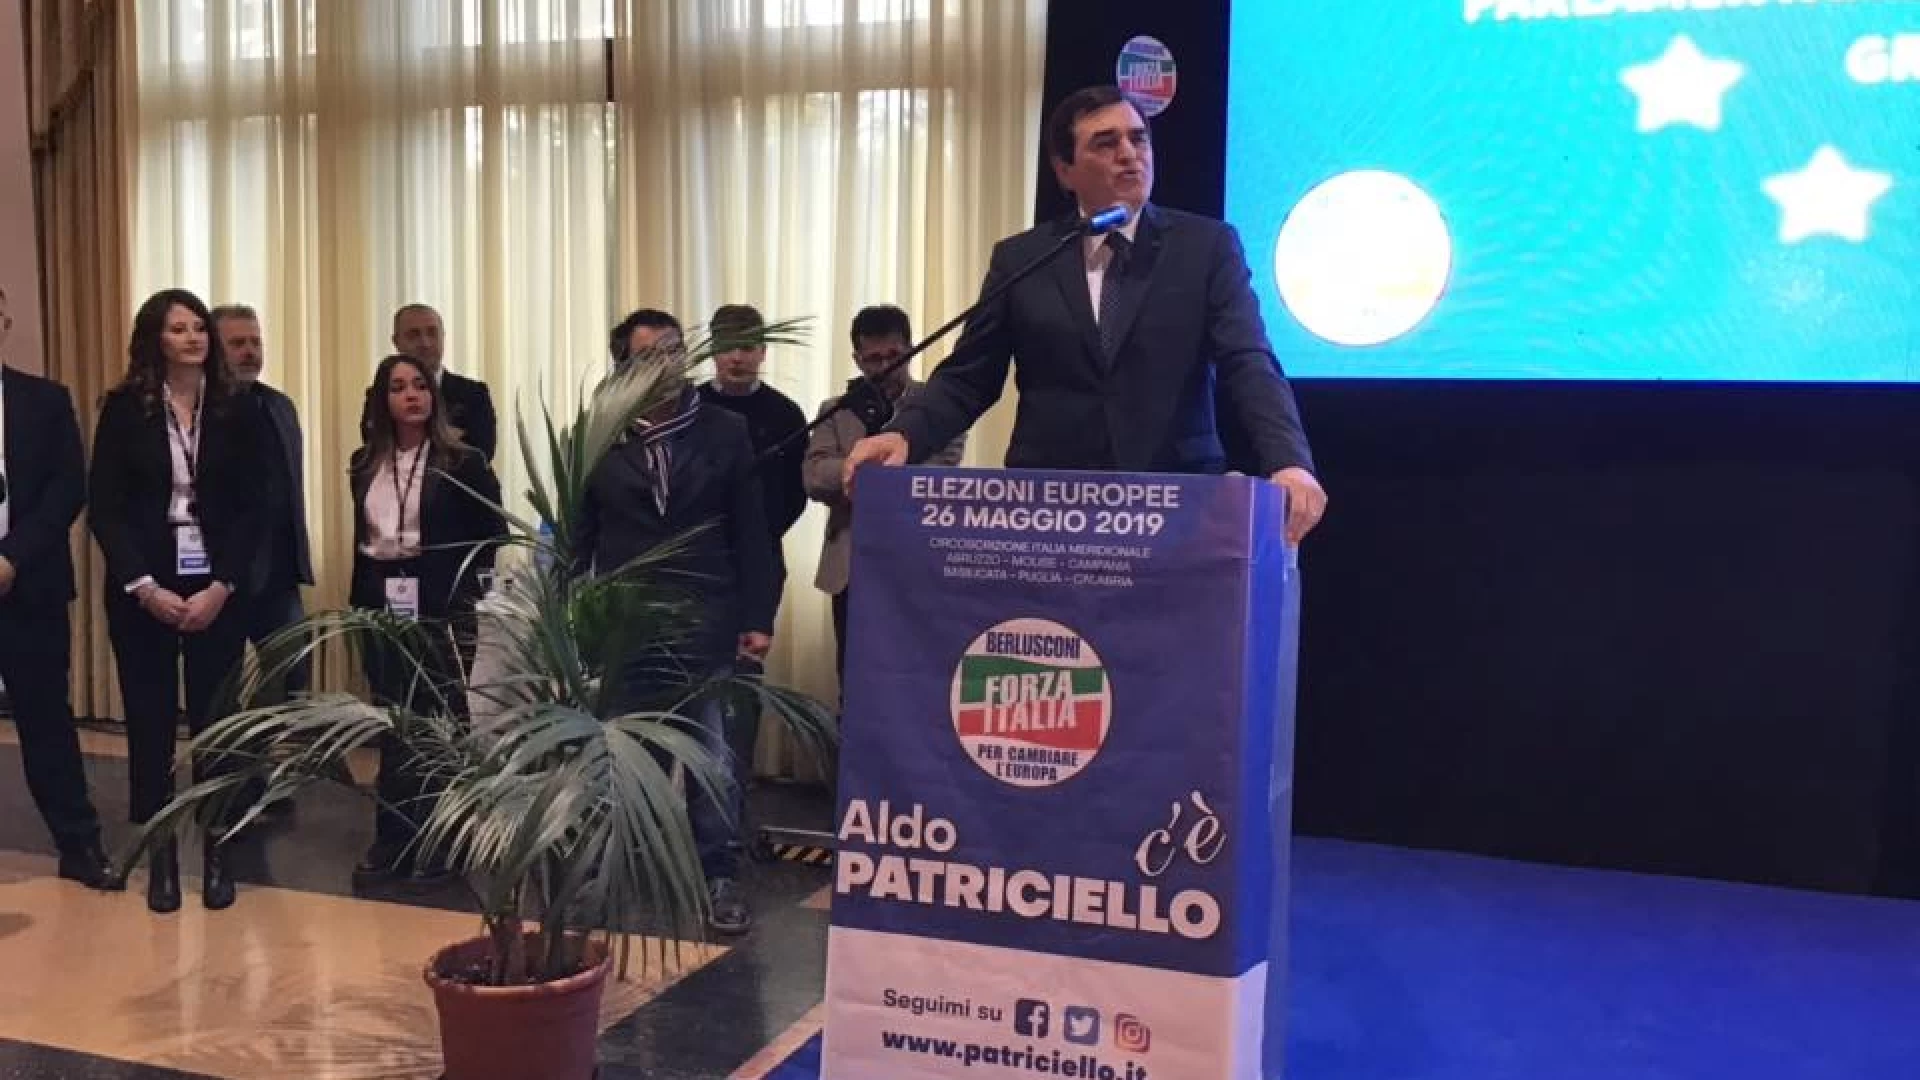 Europee 2019: Aldo Patriciello abbraccia il Molise. Bagno di folla per l’apertura della campagna elettorale.